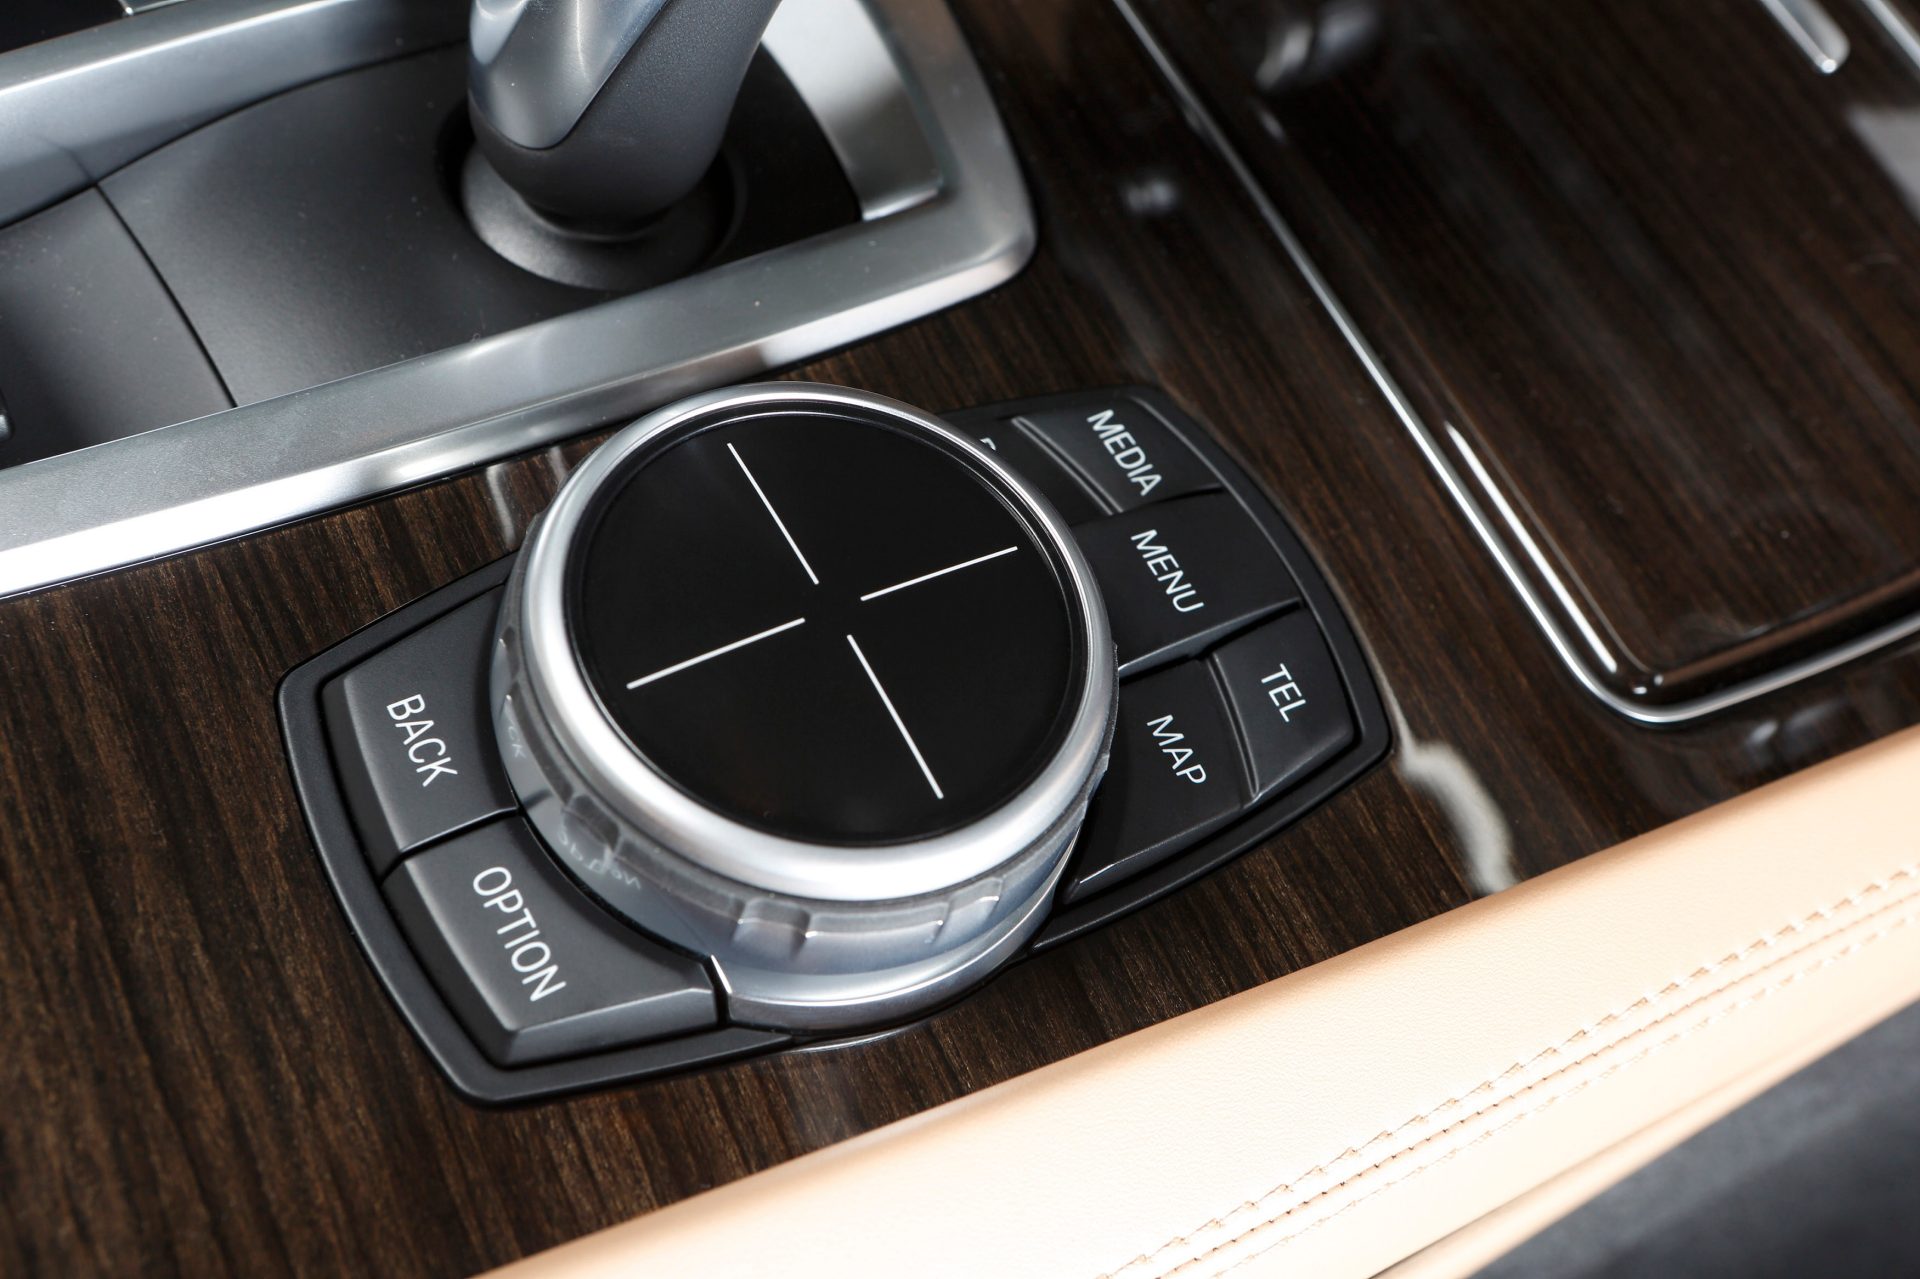 Direktwahltasten und Touchcontroller machten das BMW iDrive noch einfacher zu bedienen.